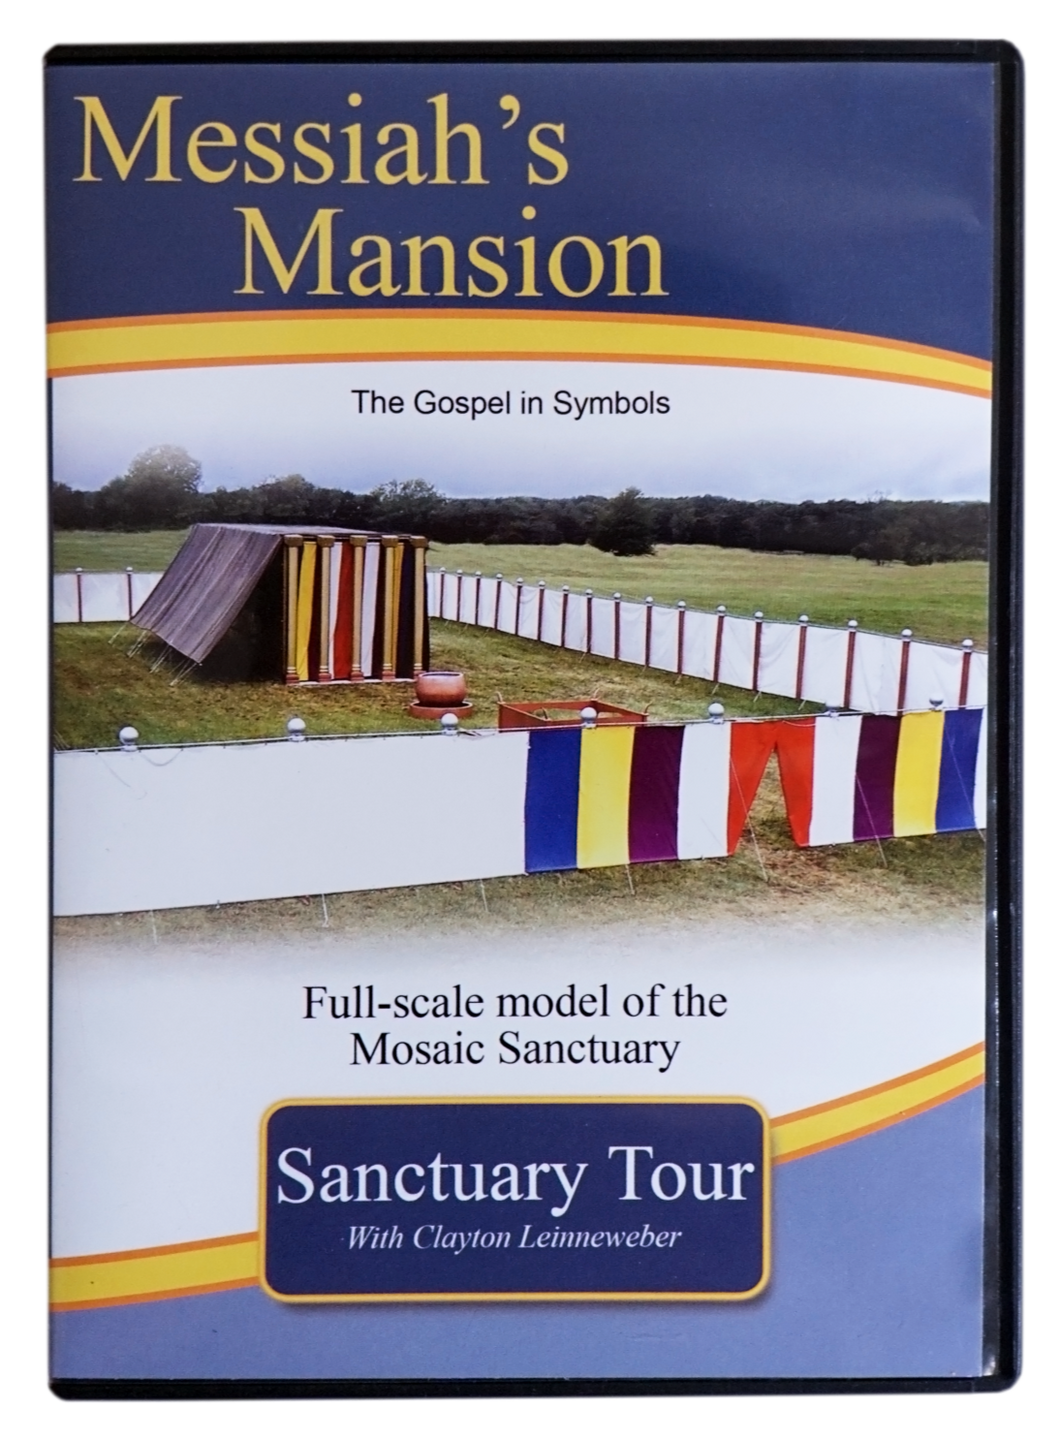 Messiah's Mansion Tour DVD